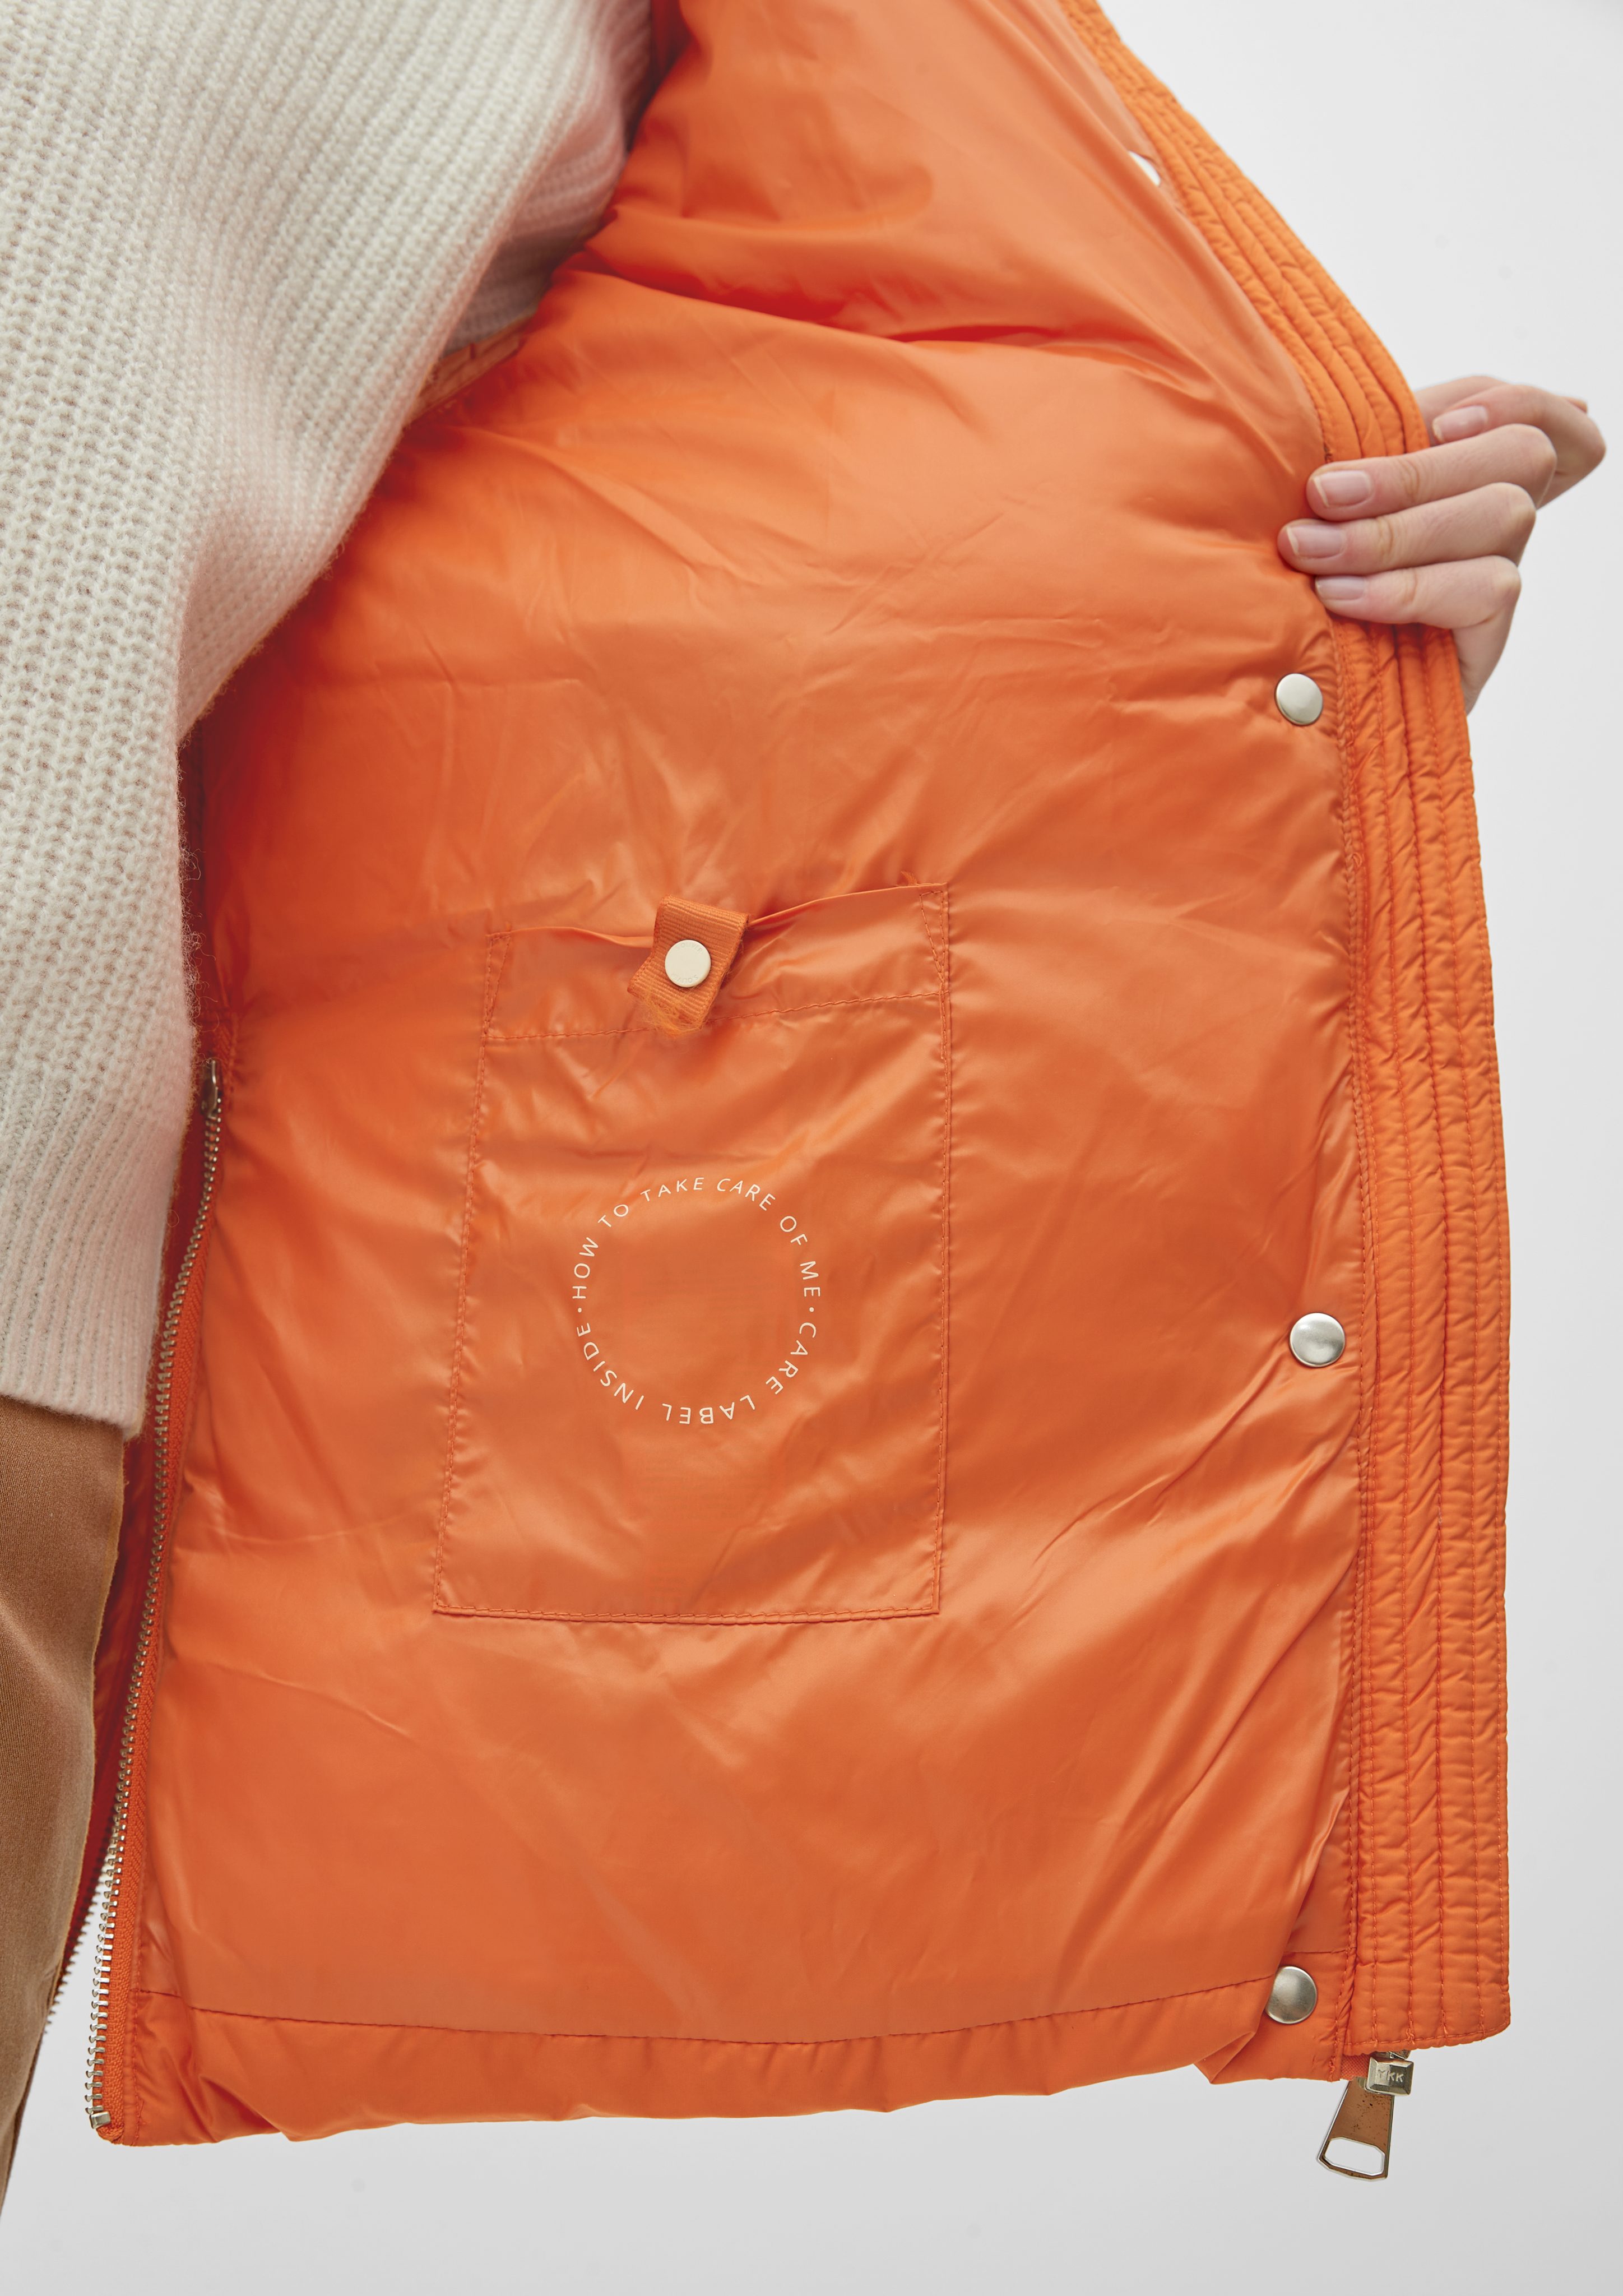 s.Oliver Outdoorjacke Warm wattierte light orange Pufferjacket